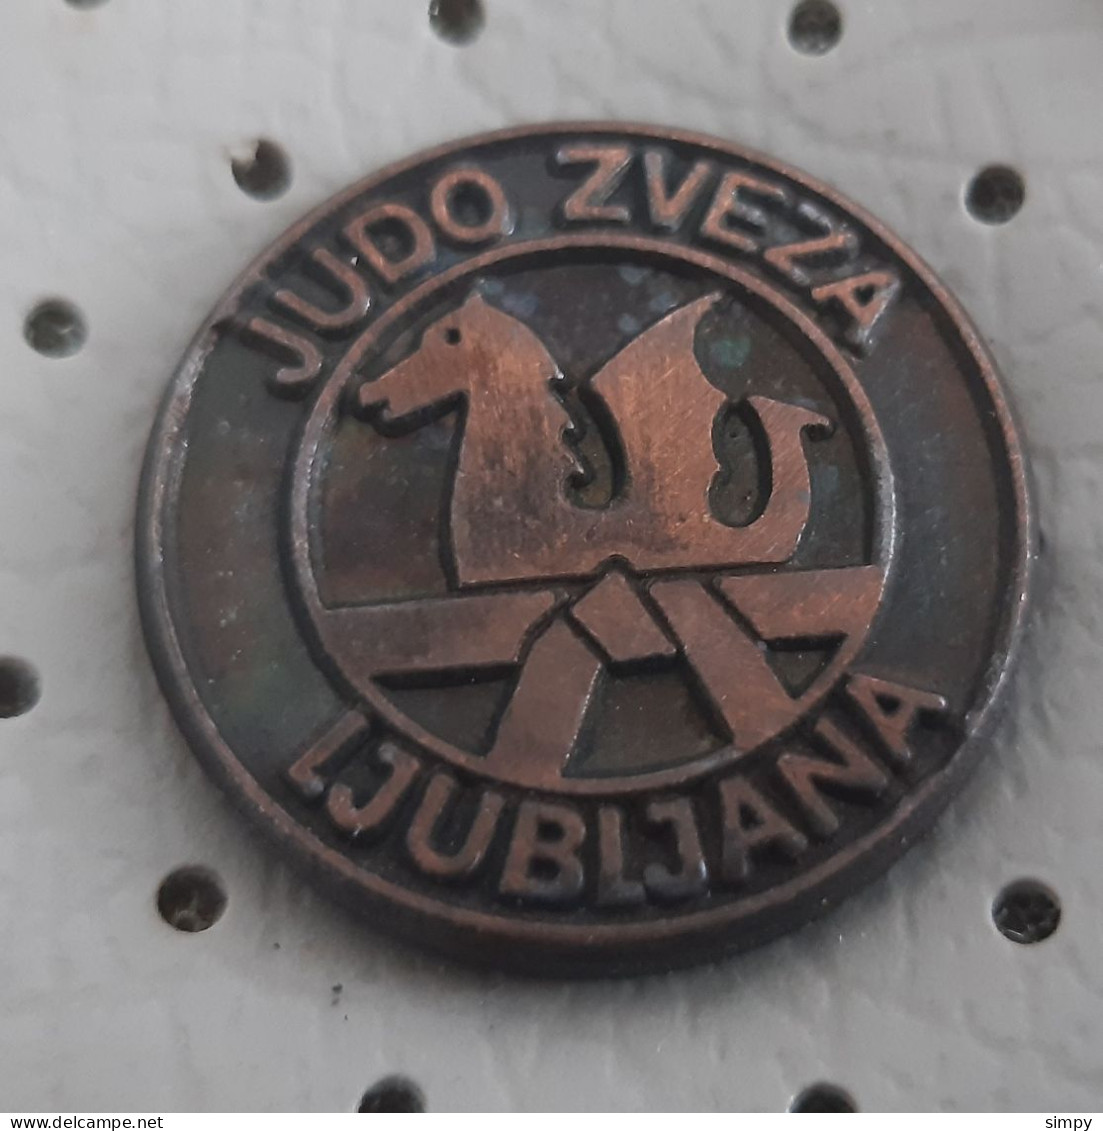 JUDO Association Of Ljubljana Slovenia Pin - Judo